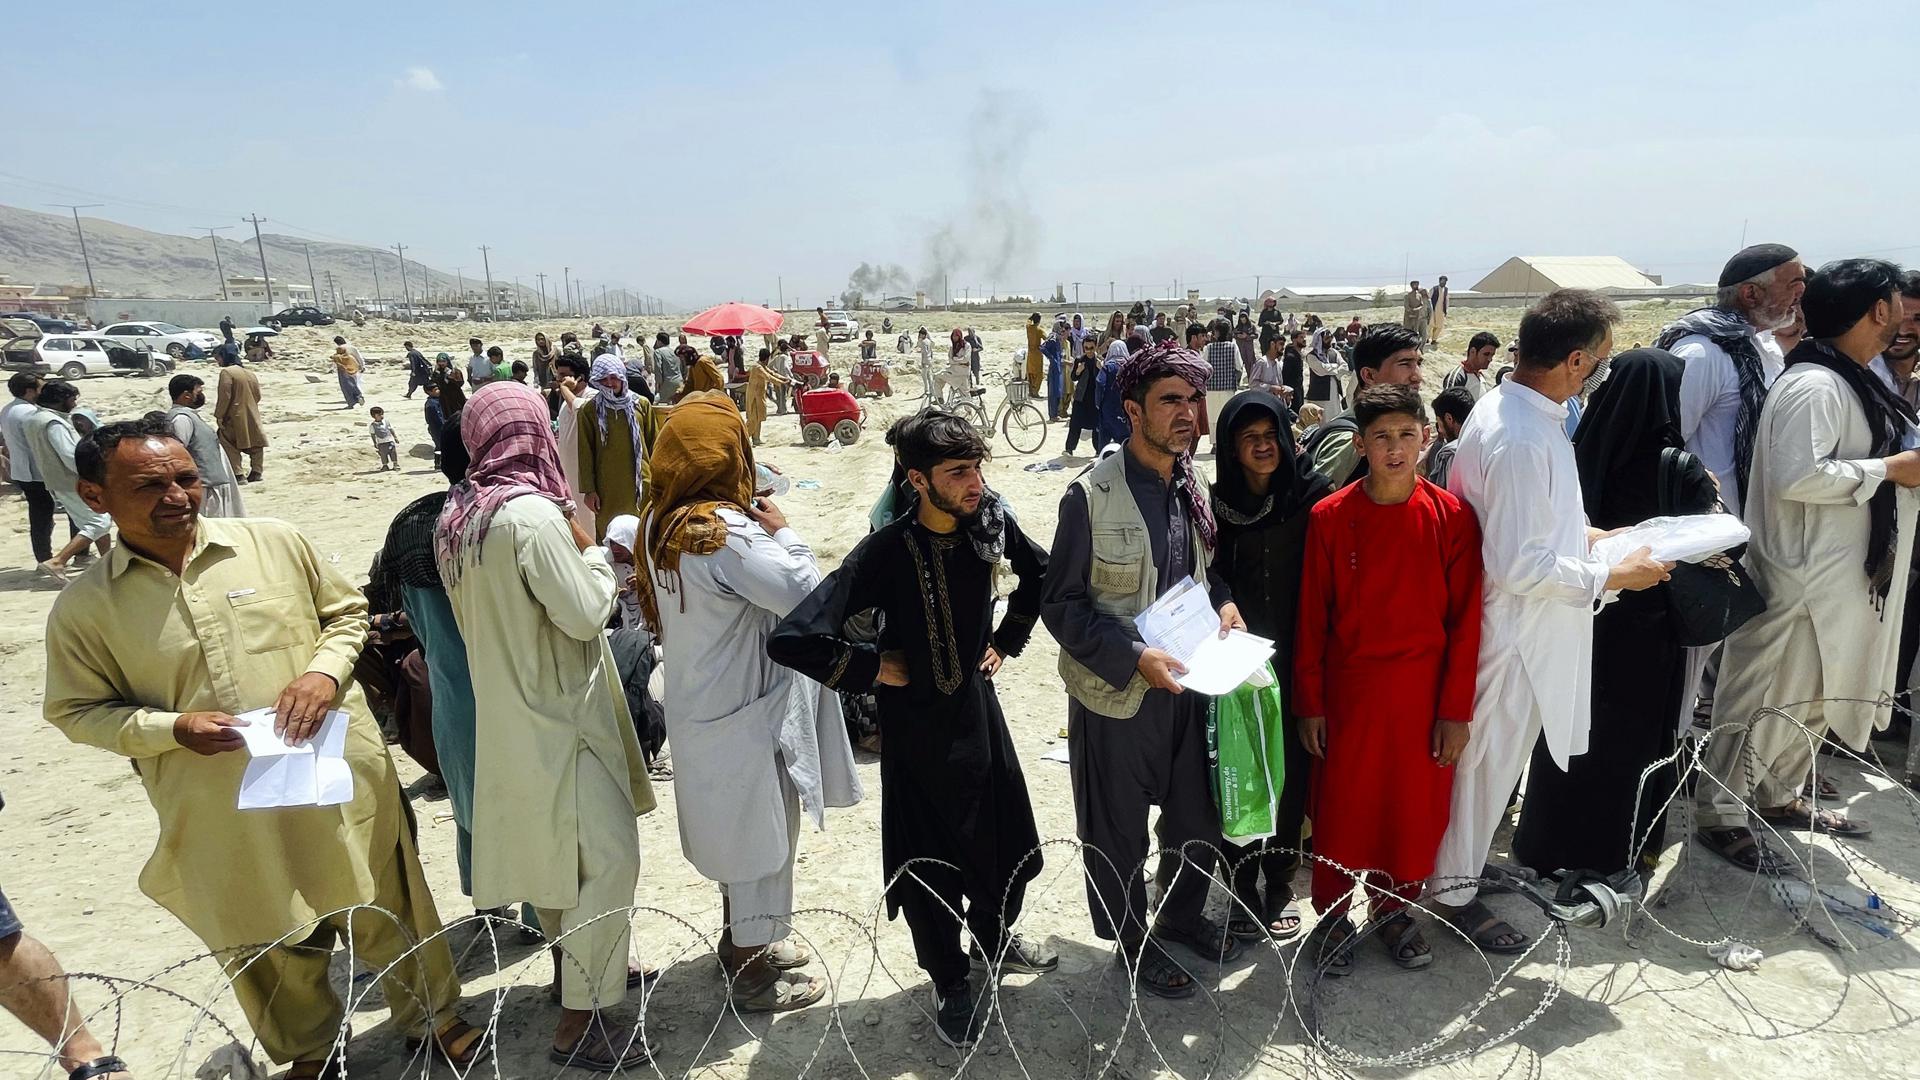 Hunderte von Menschen versammeln sich vor dem internationalen Flughafen. Die Taliban sprachen am Dienstag, 17.08.2021, in ganz Afghanistan eine «Amnestie» aus und forderten die Frauen auf, sich ihrer Regierung anzuschließen. Damit wollten sie die skeptische Bevölkerung davon überzeugen, dass sie sich geändert haben. +++ dpa-Bildfunk +++